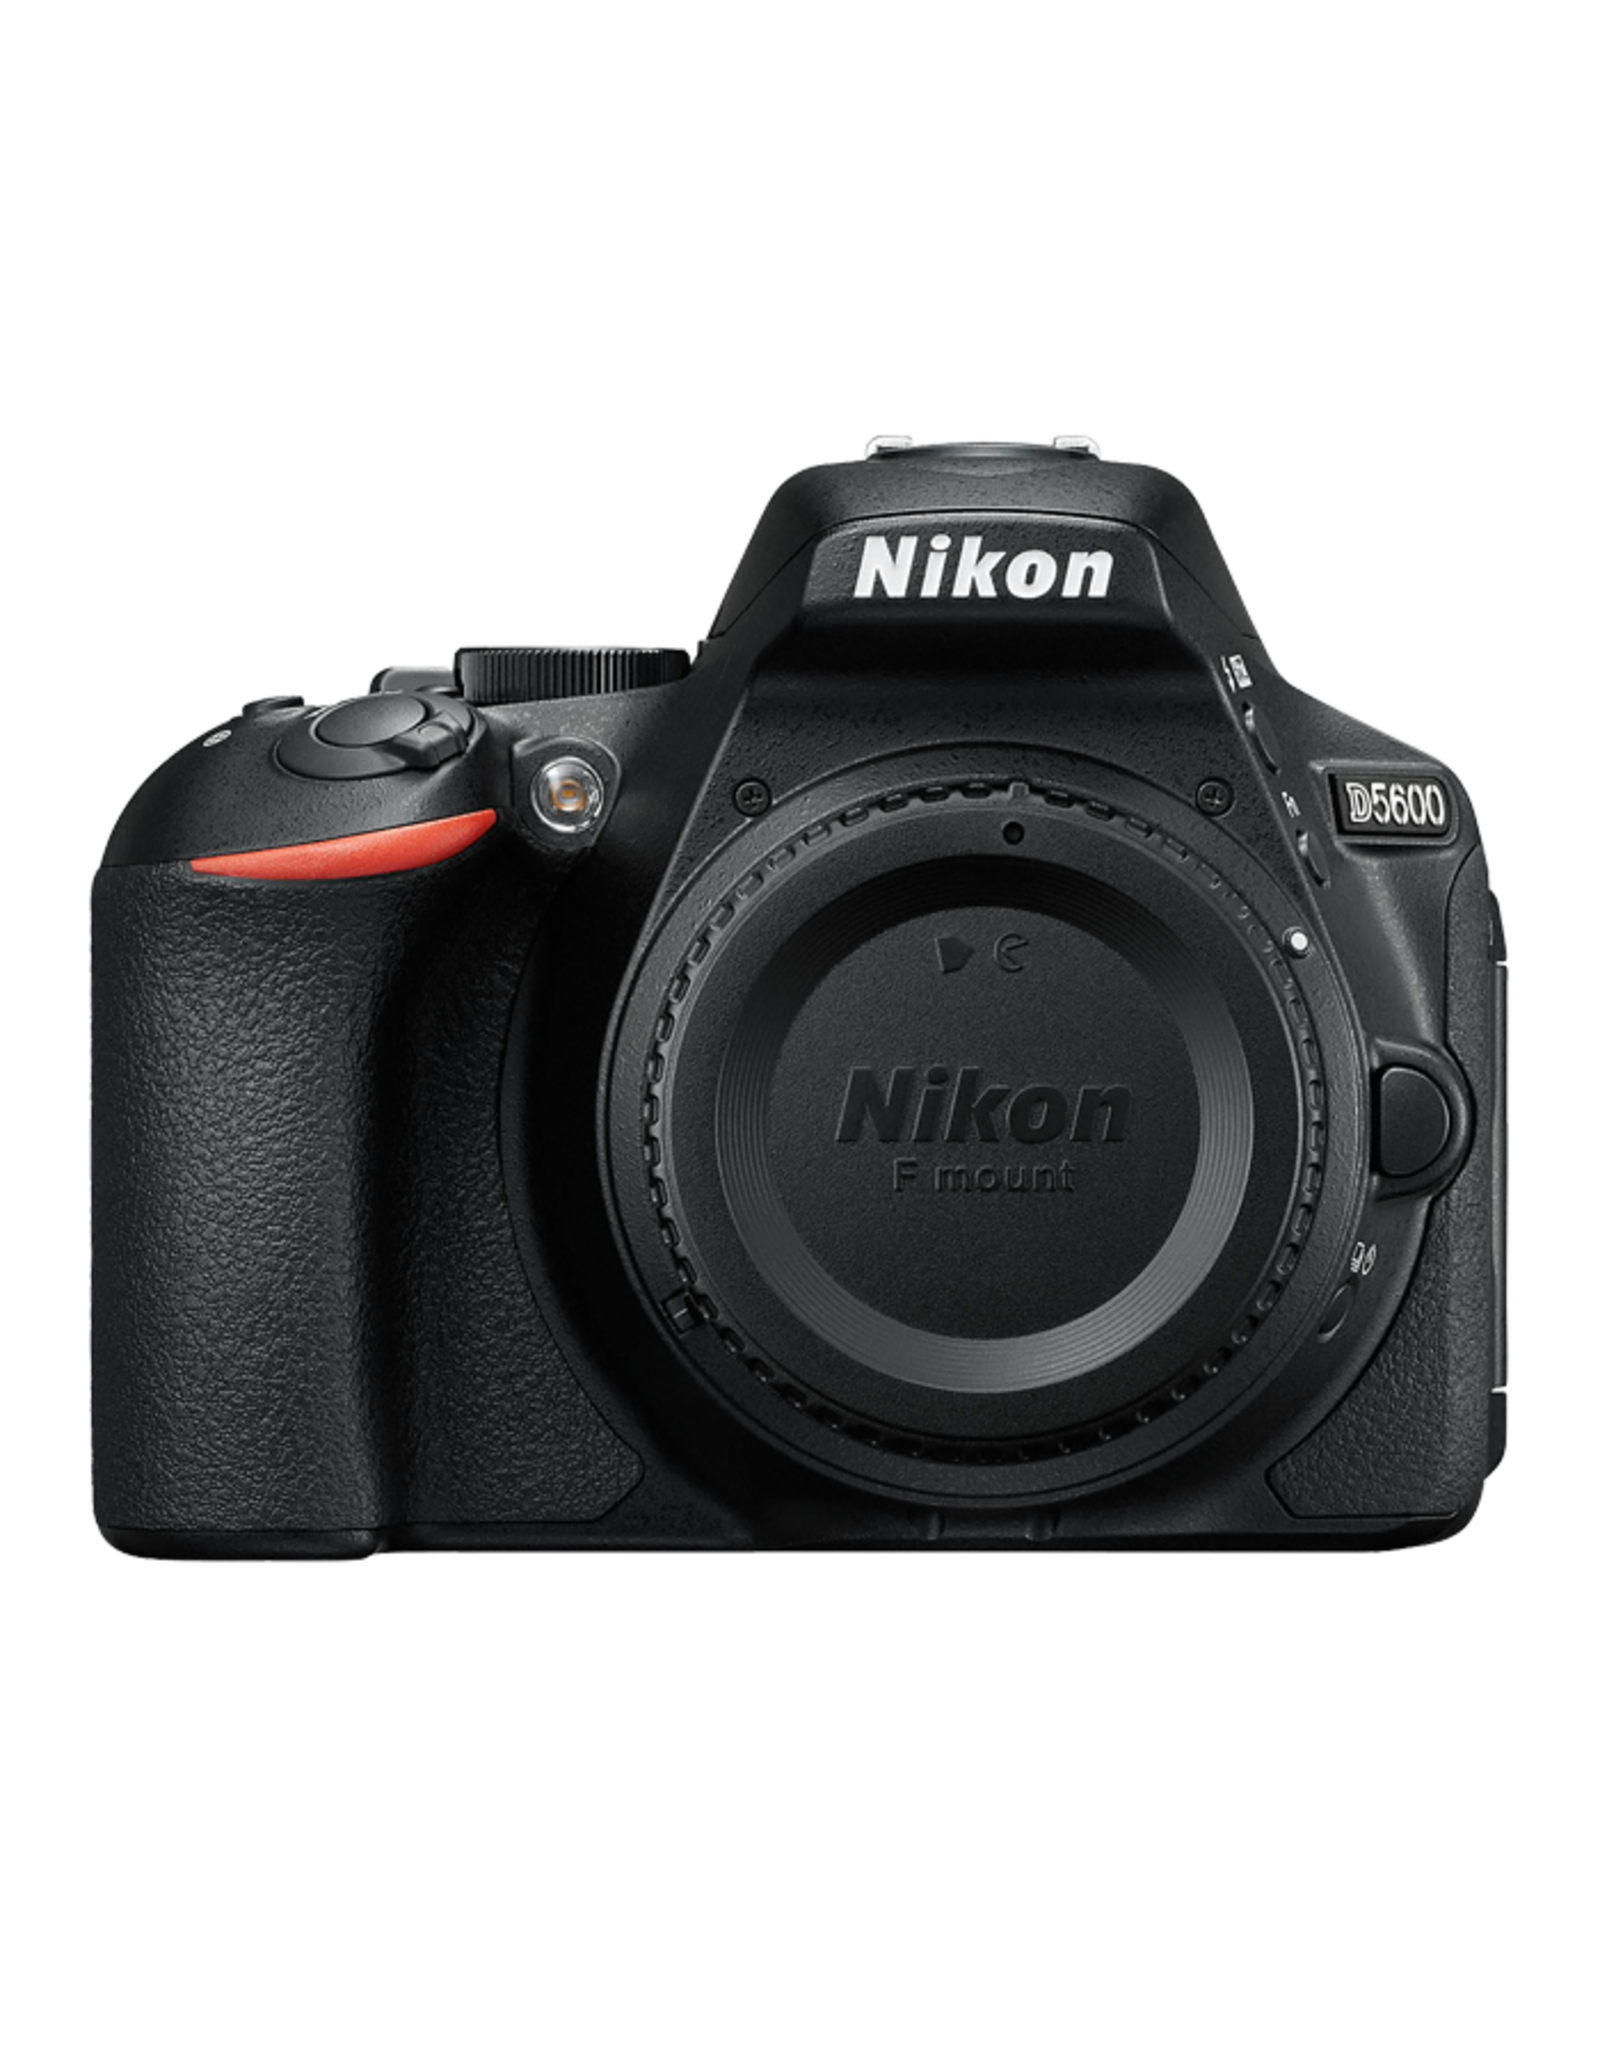 Chiếc máy ảnh Nikon D5600 được trang bị các tính năng mới nhất, giúp bạn chụp ảnh đẹp và chất lượng cao. Đặc biệt, với tính năng kết nối WiFi và Bluetooth, bạn có thể dễ dàng chia sẻ những bức ảnh tuyệt vời với bạn bè và gia đình. Hãy xem ảnh để cảm nhận sự khác biệt của chiếc máy ảnh này. 